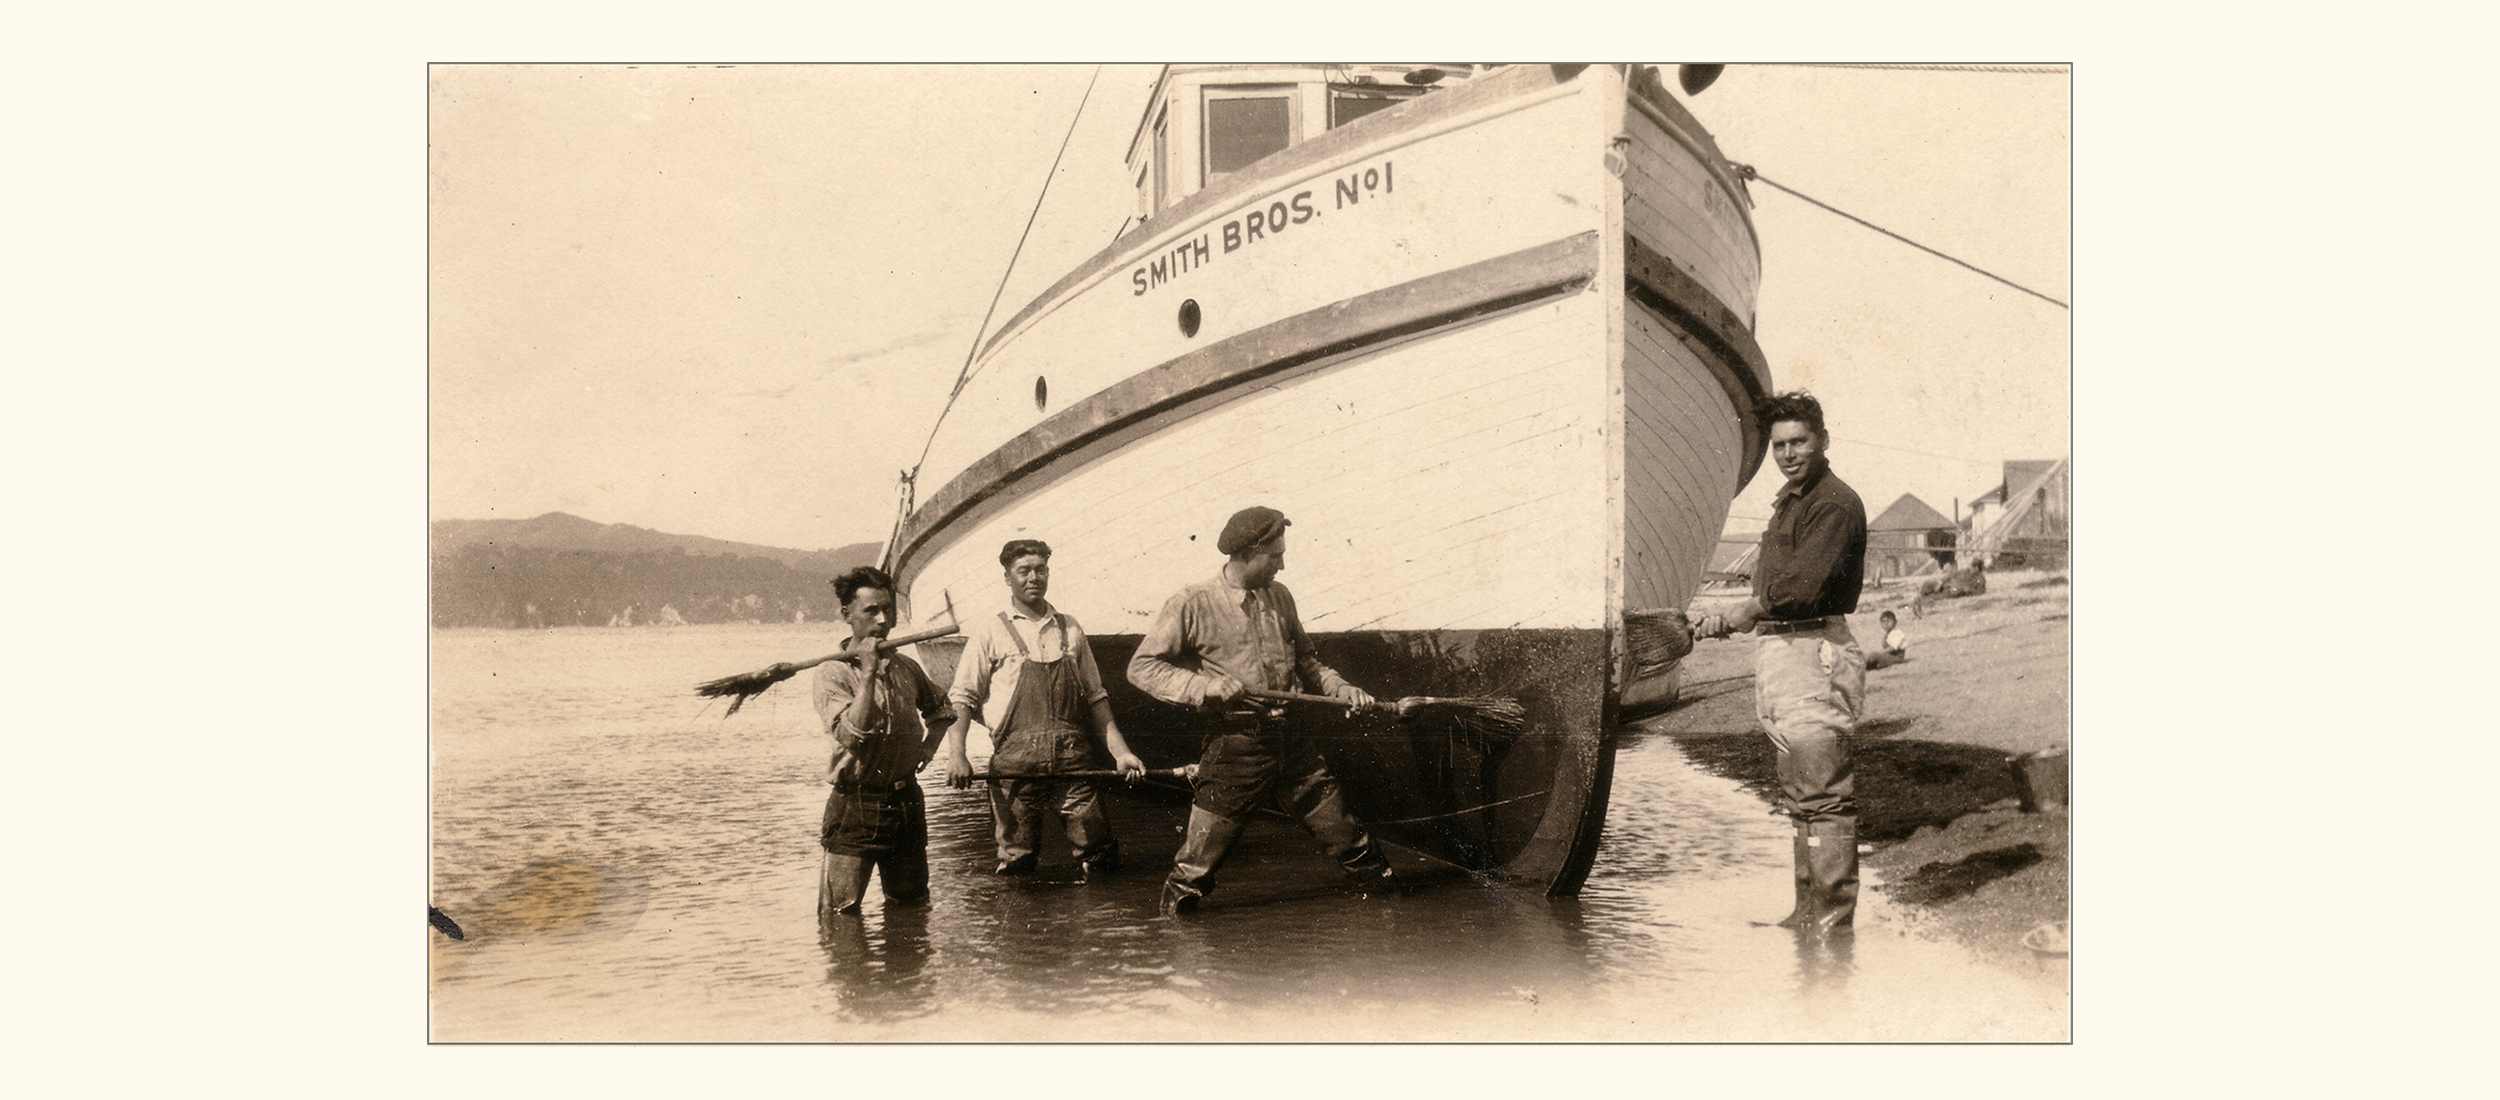 Smith Bros. No. 1, Bodega Bay’s Smith Bros. Fishery (early 20th century)